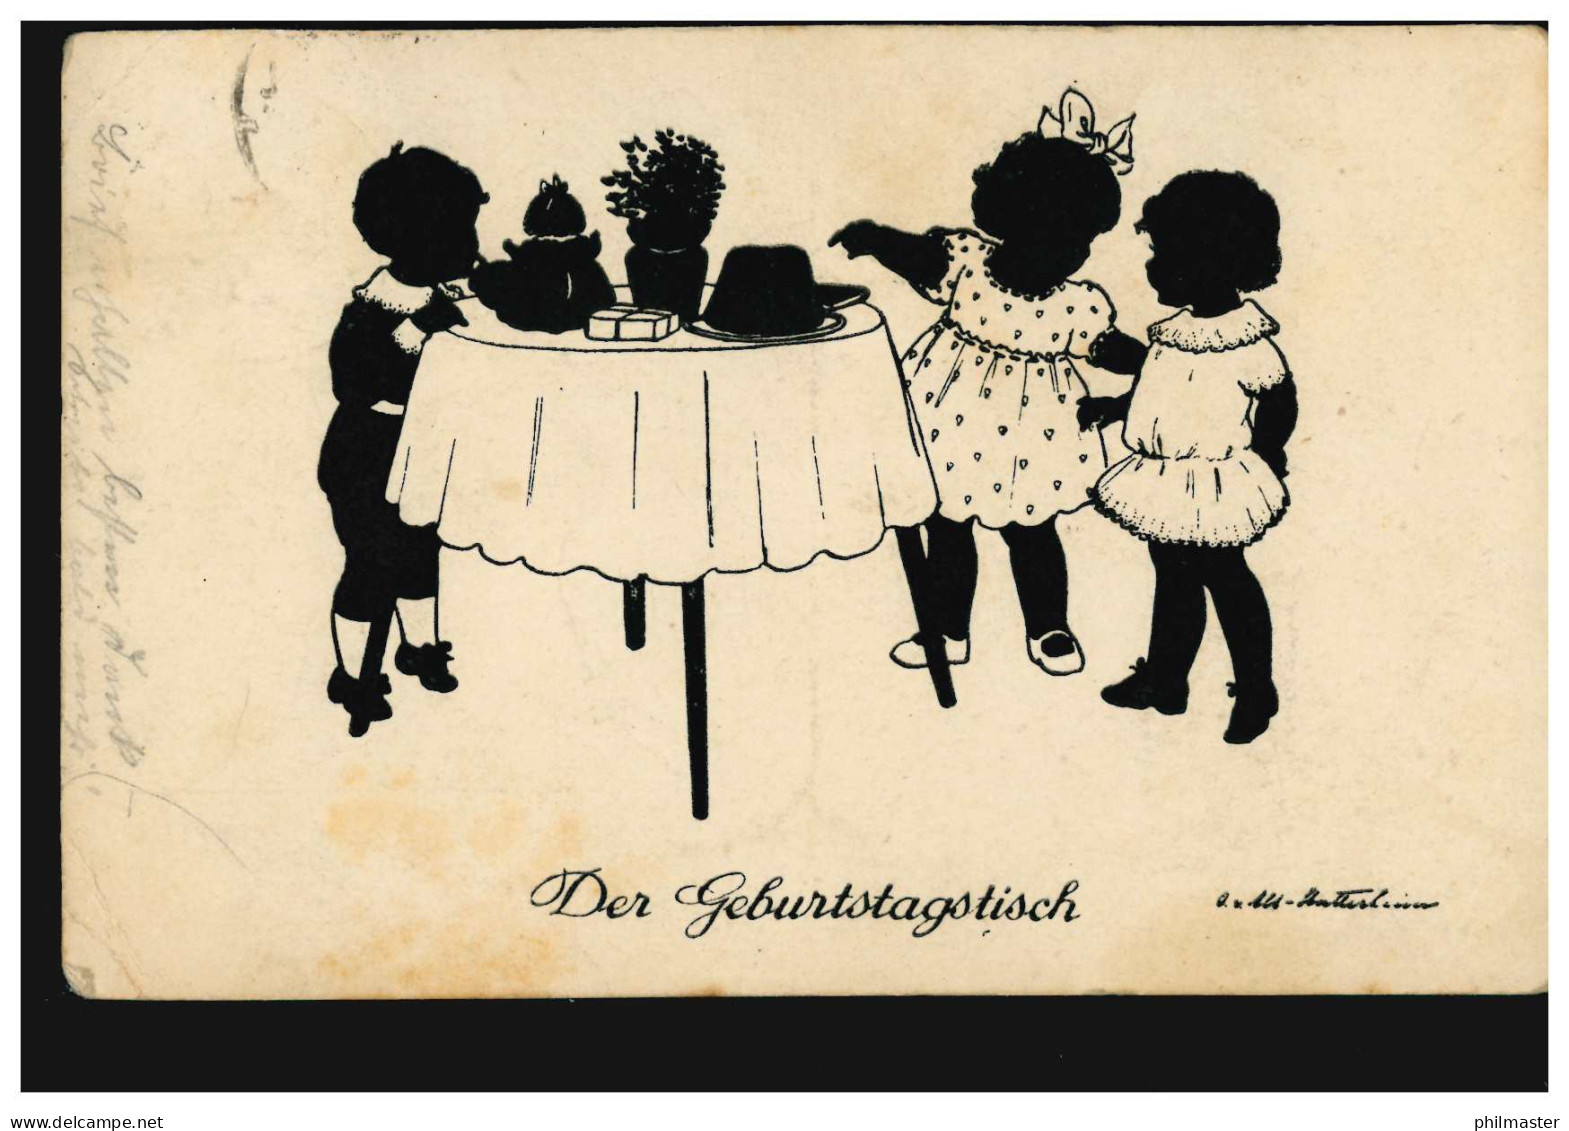 Scherenschnitt-AK Der Geburtstagstisch, Verlag G.K.V. Berlin, RHEYDT 23.6.1926 - Silhouette - Scissor-type